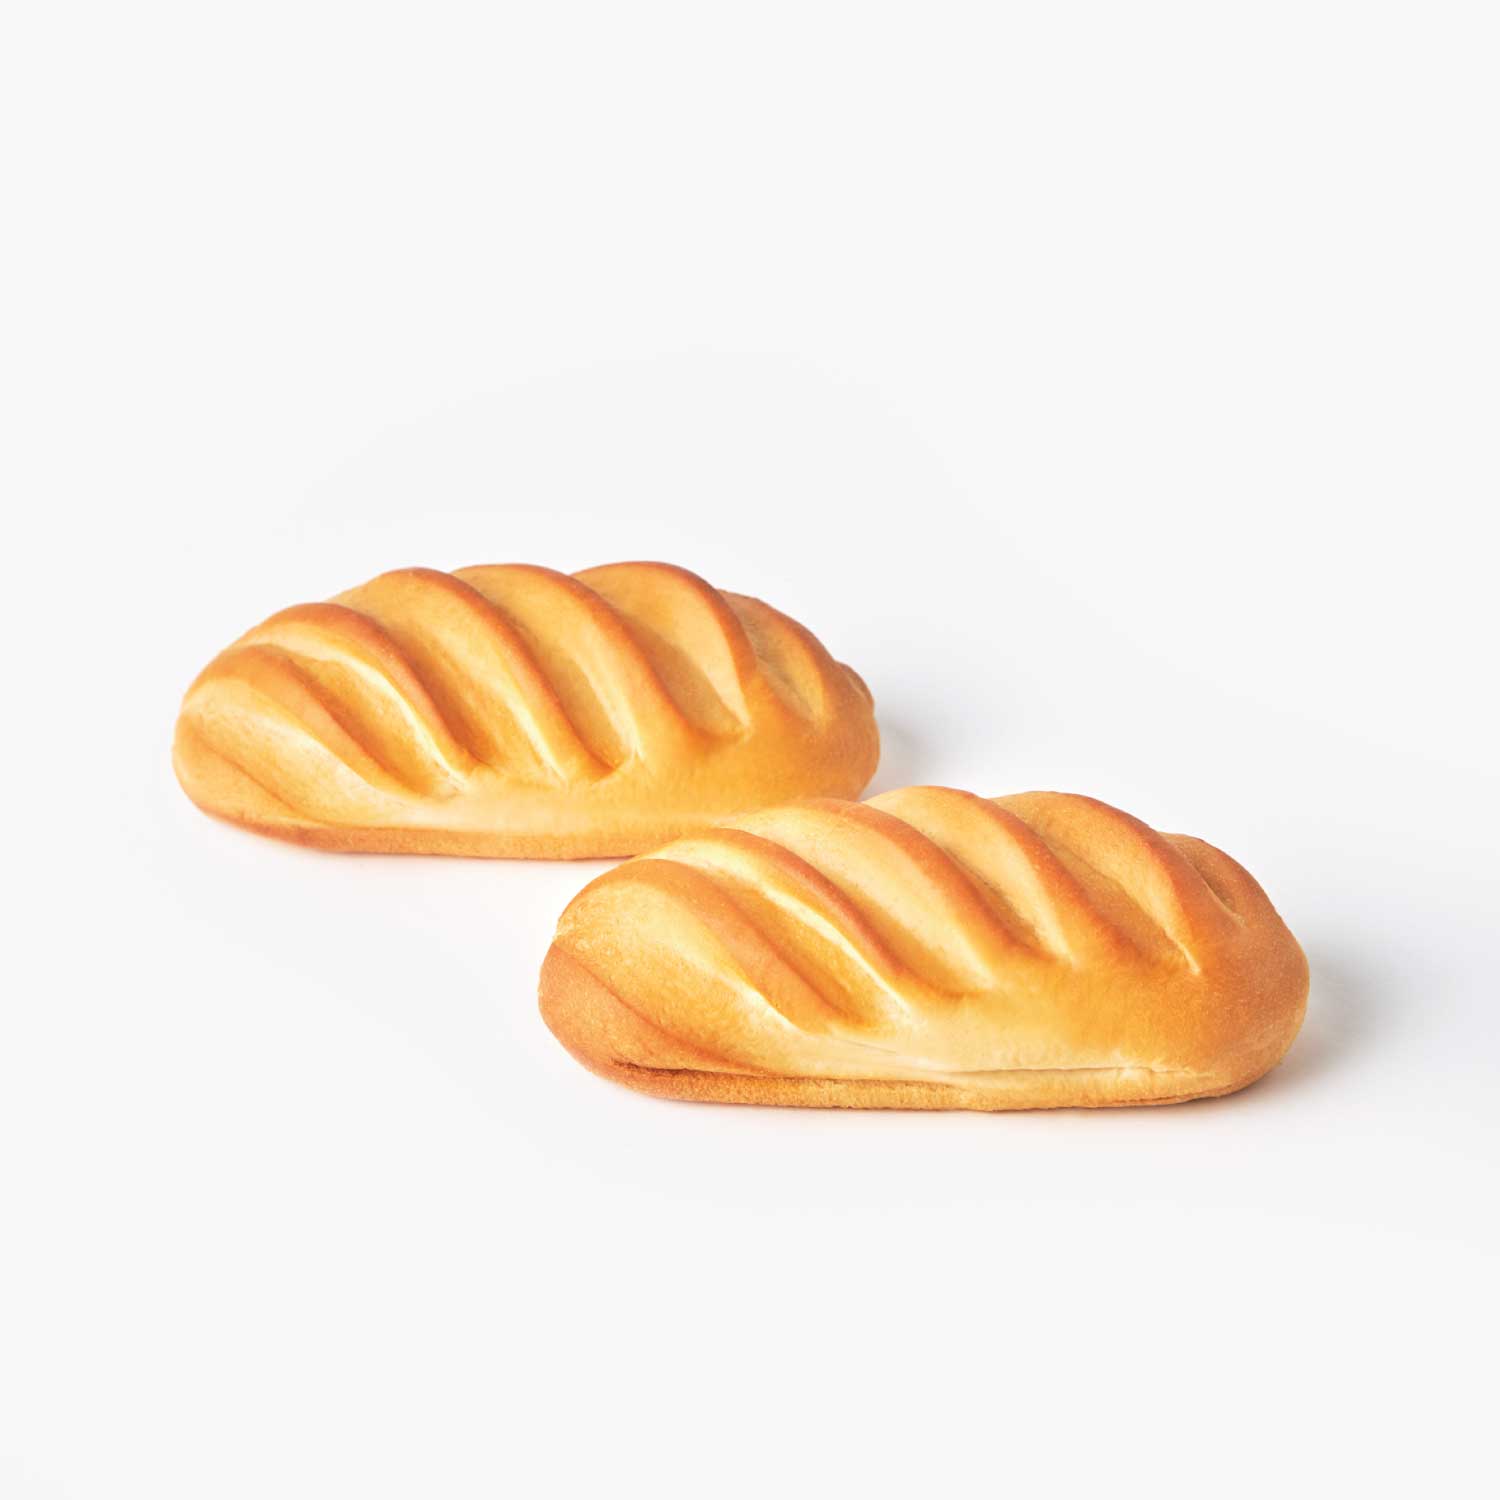 ขนมปังแช่แข็ง : SYNOVA ฮอทดอกบัน (ยกกล่อง)